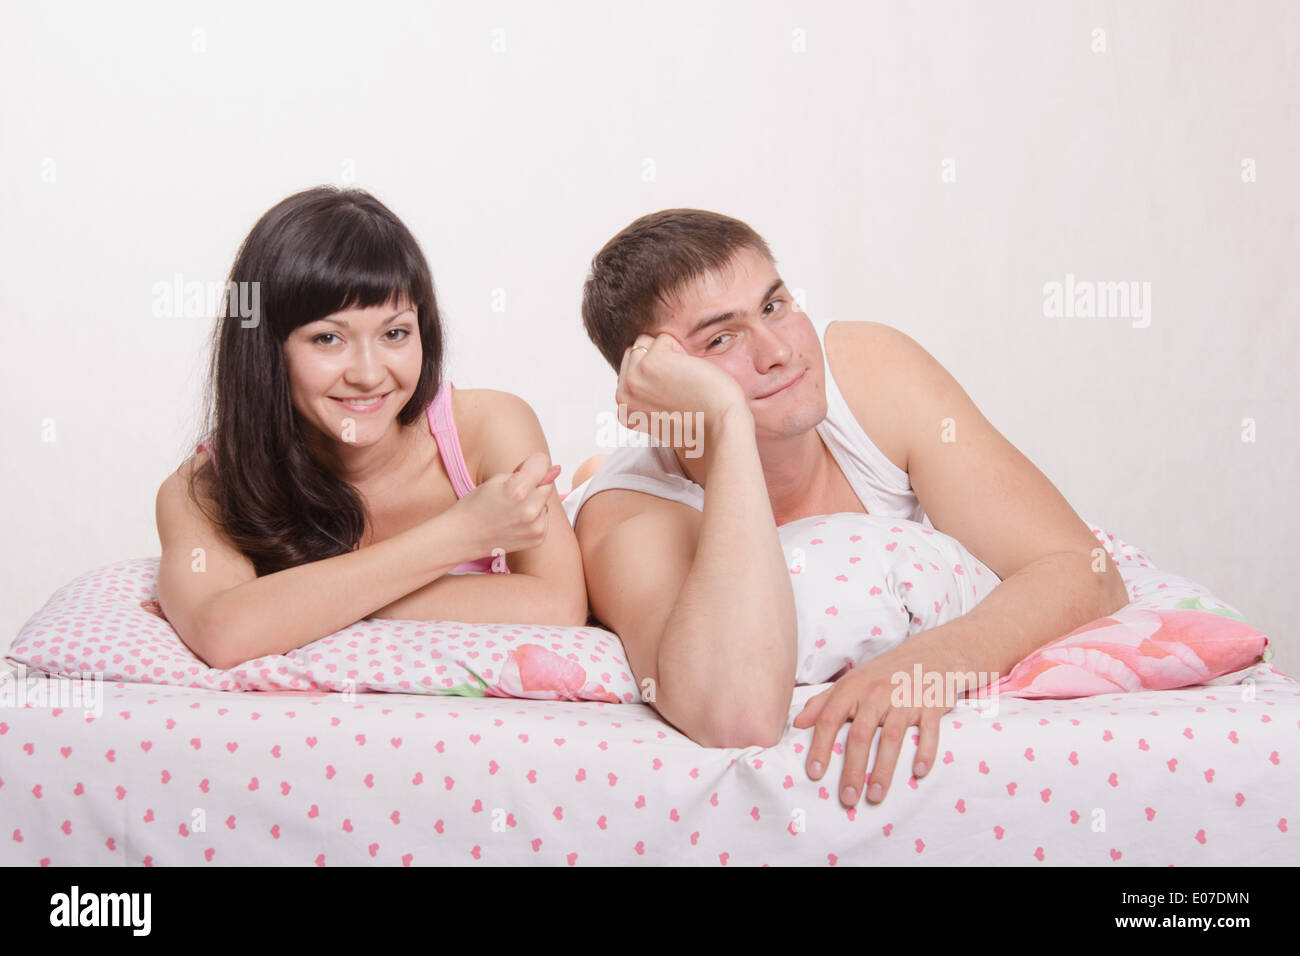 Русские муж и жена в постели